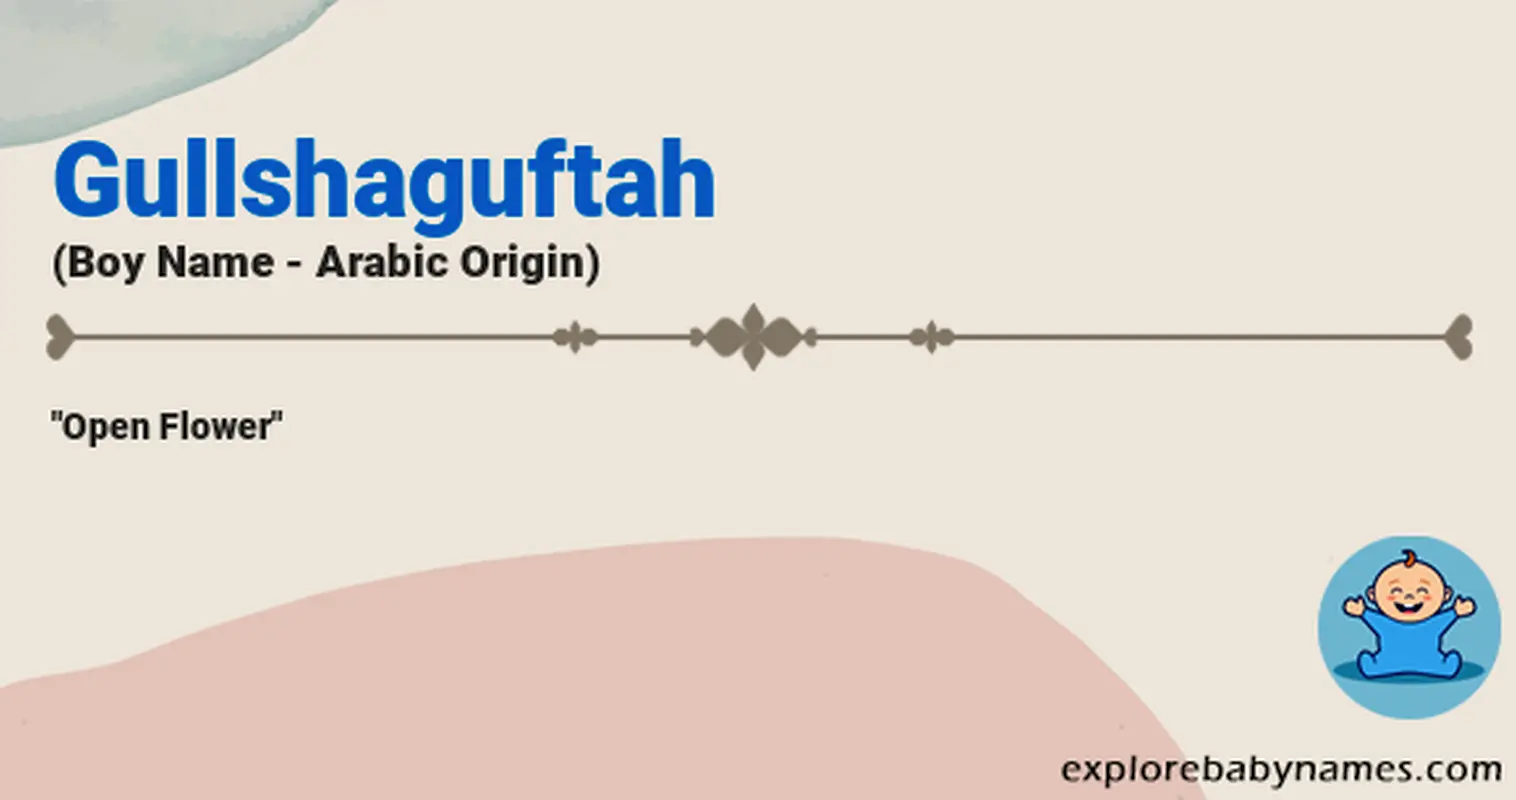 Meaning of Gullshaguftah